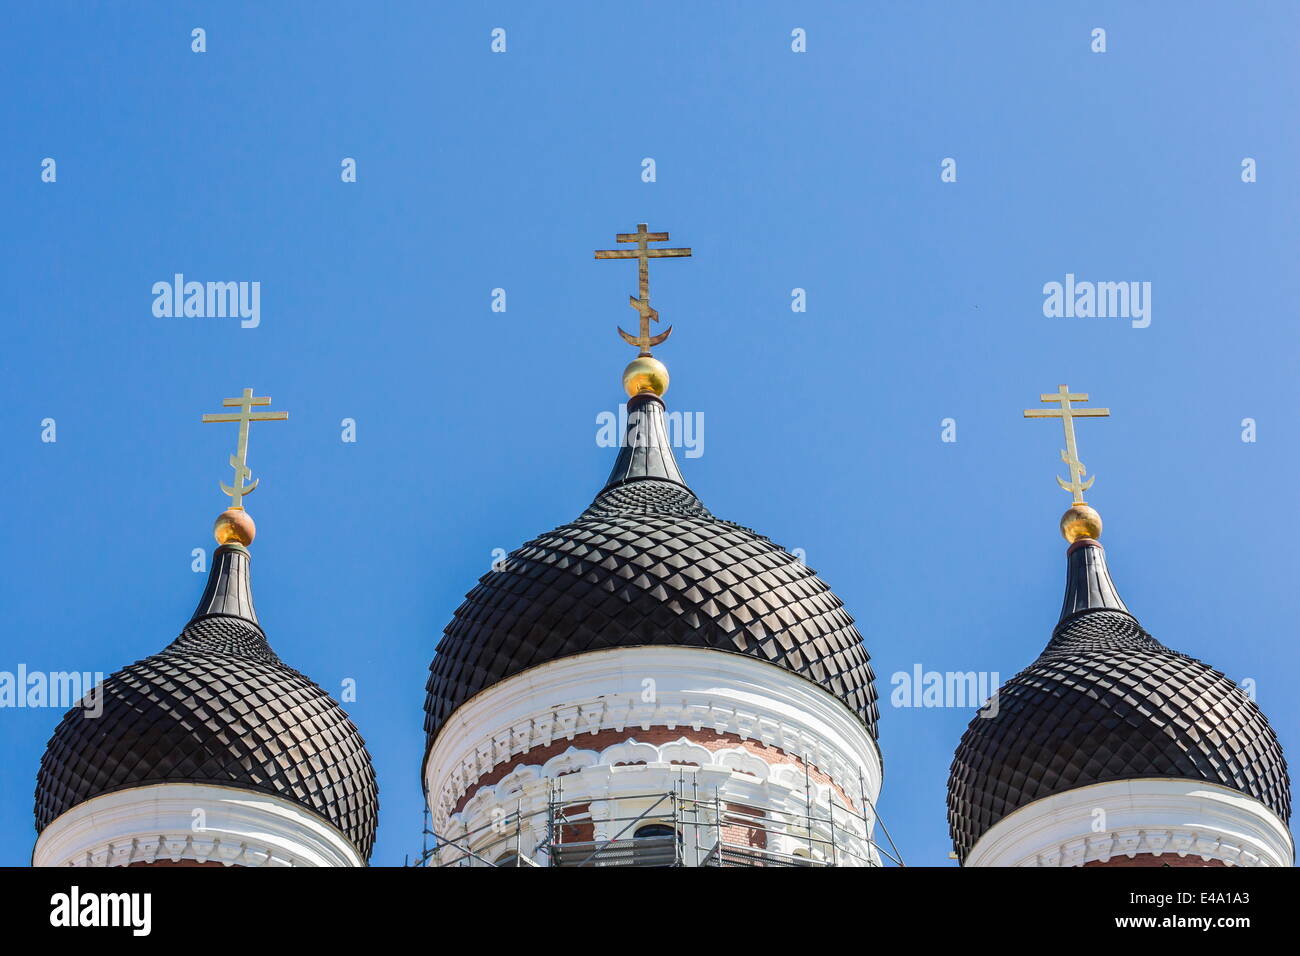 Chiesa ortodossa a cupola a guglie della città capitale di Tallinn, Estonia, Europa Foto Stock